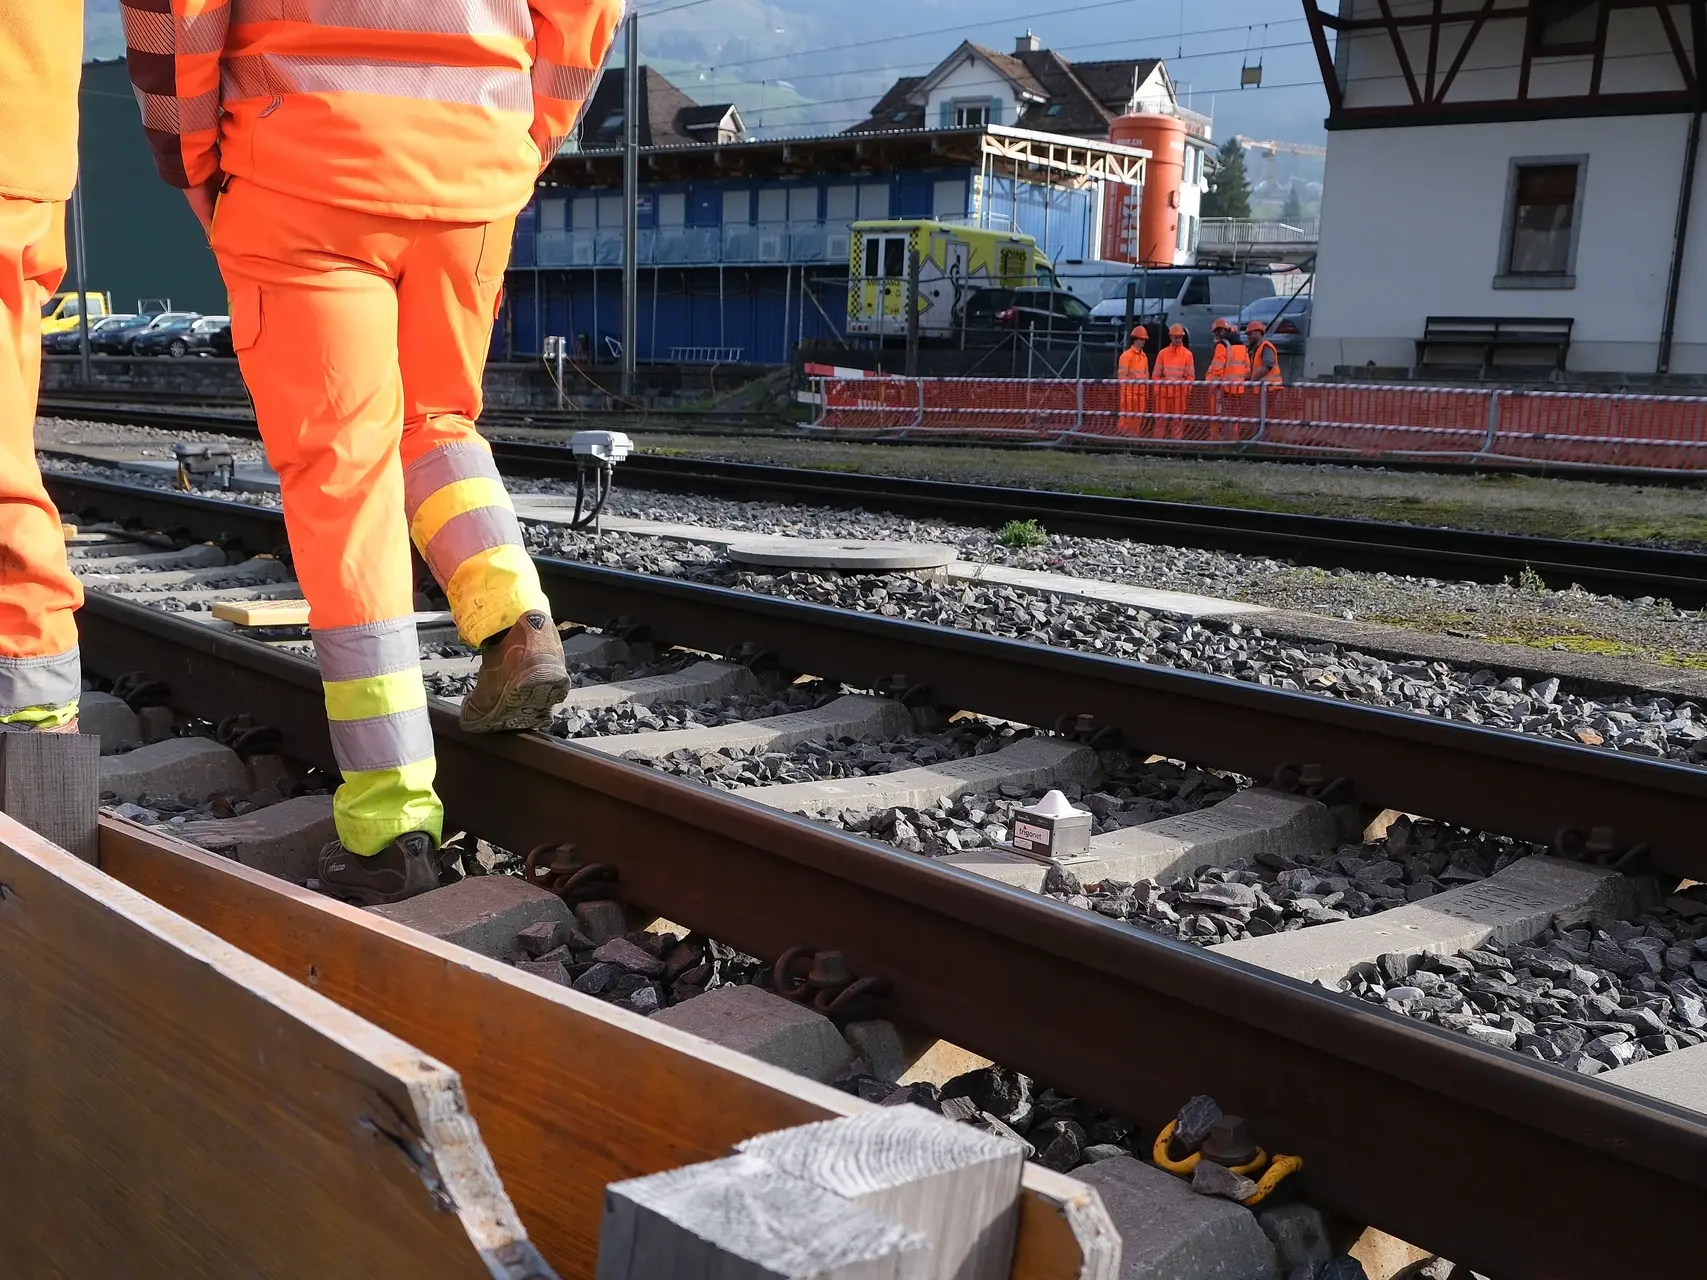 Zwei Bauarbeiter in orangener Arbeitskleidung laufen am Gleisbett mit dem Sichtschacht für die Verfüllung mit Fixit POR vorbei